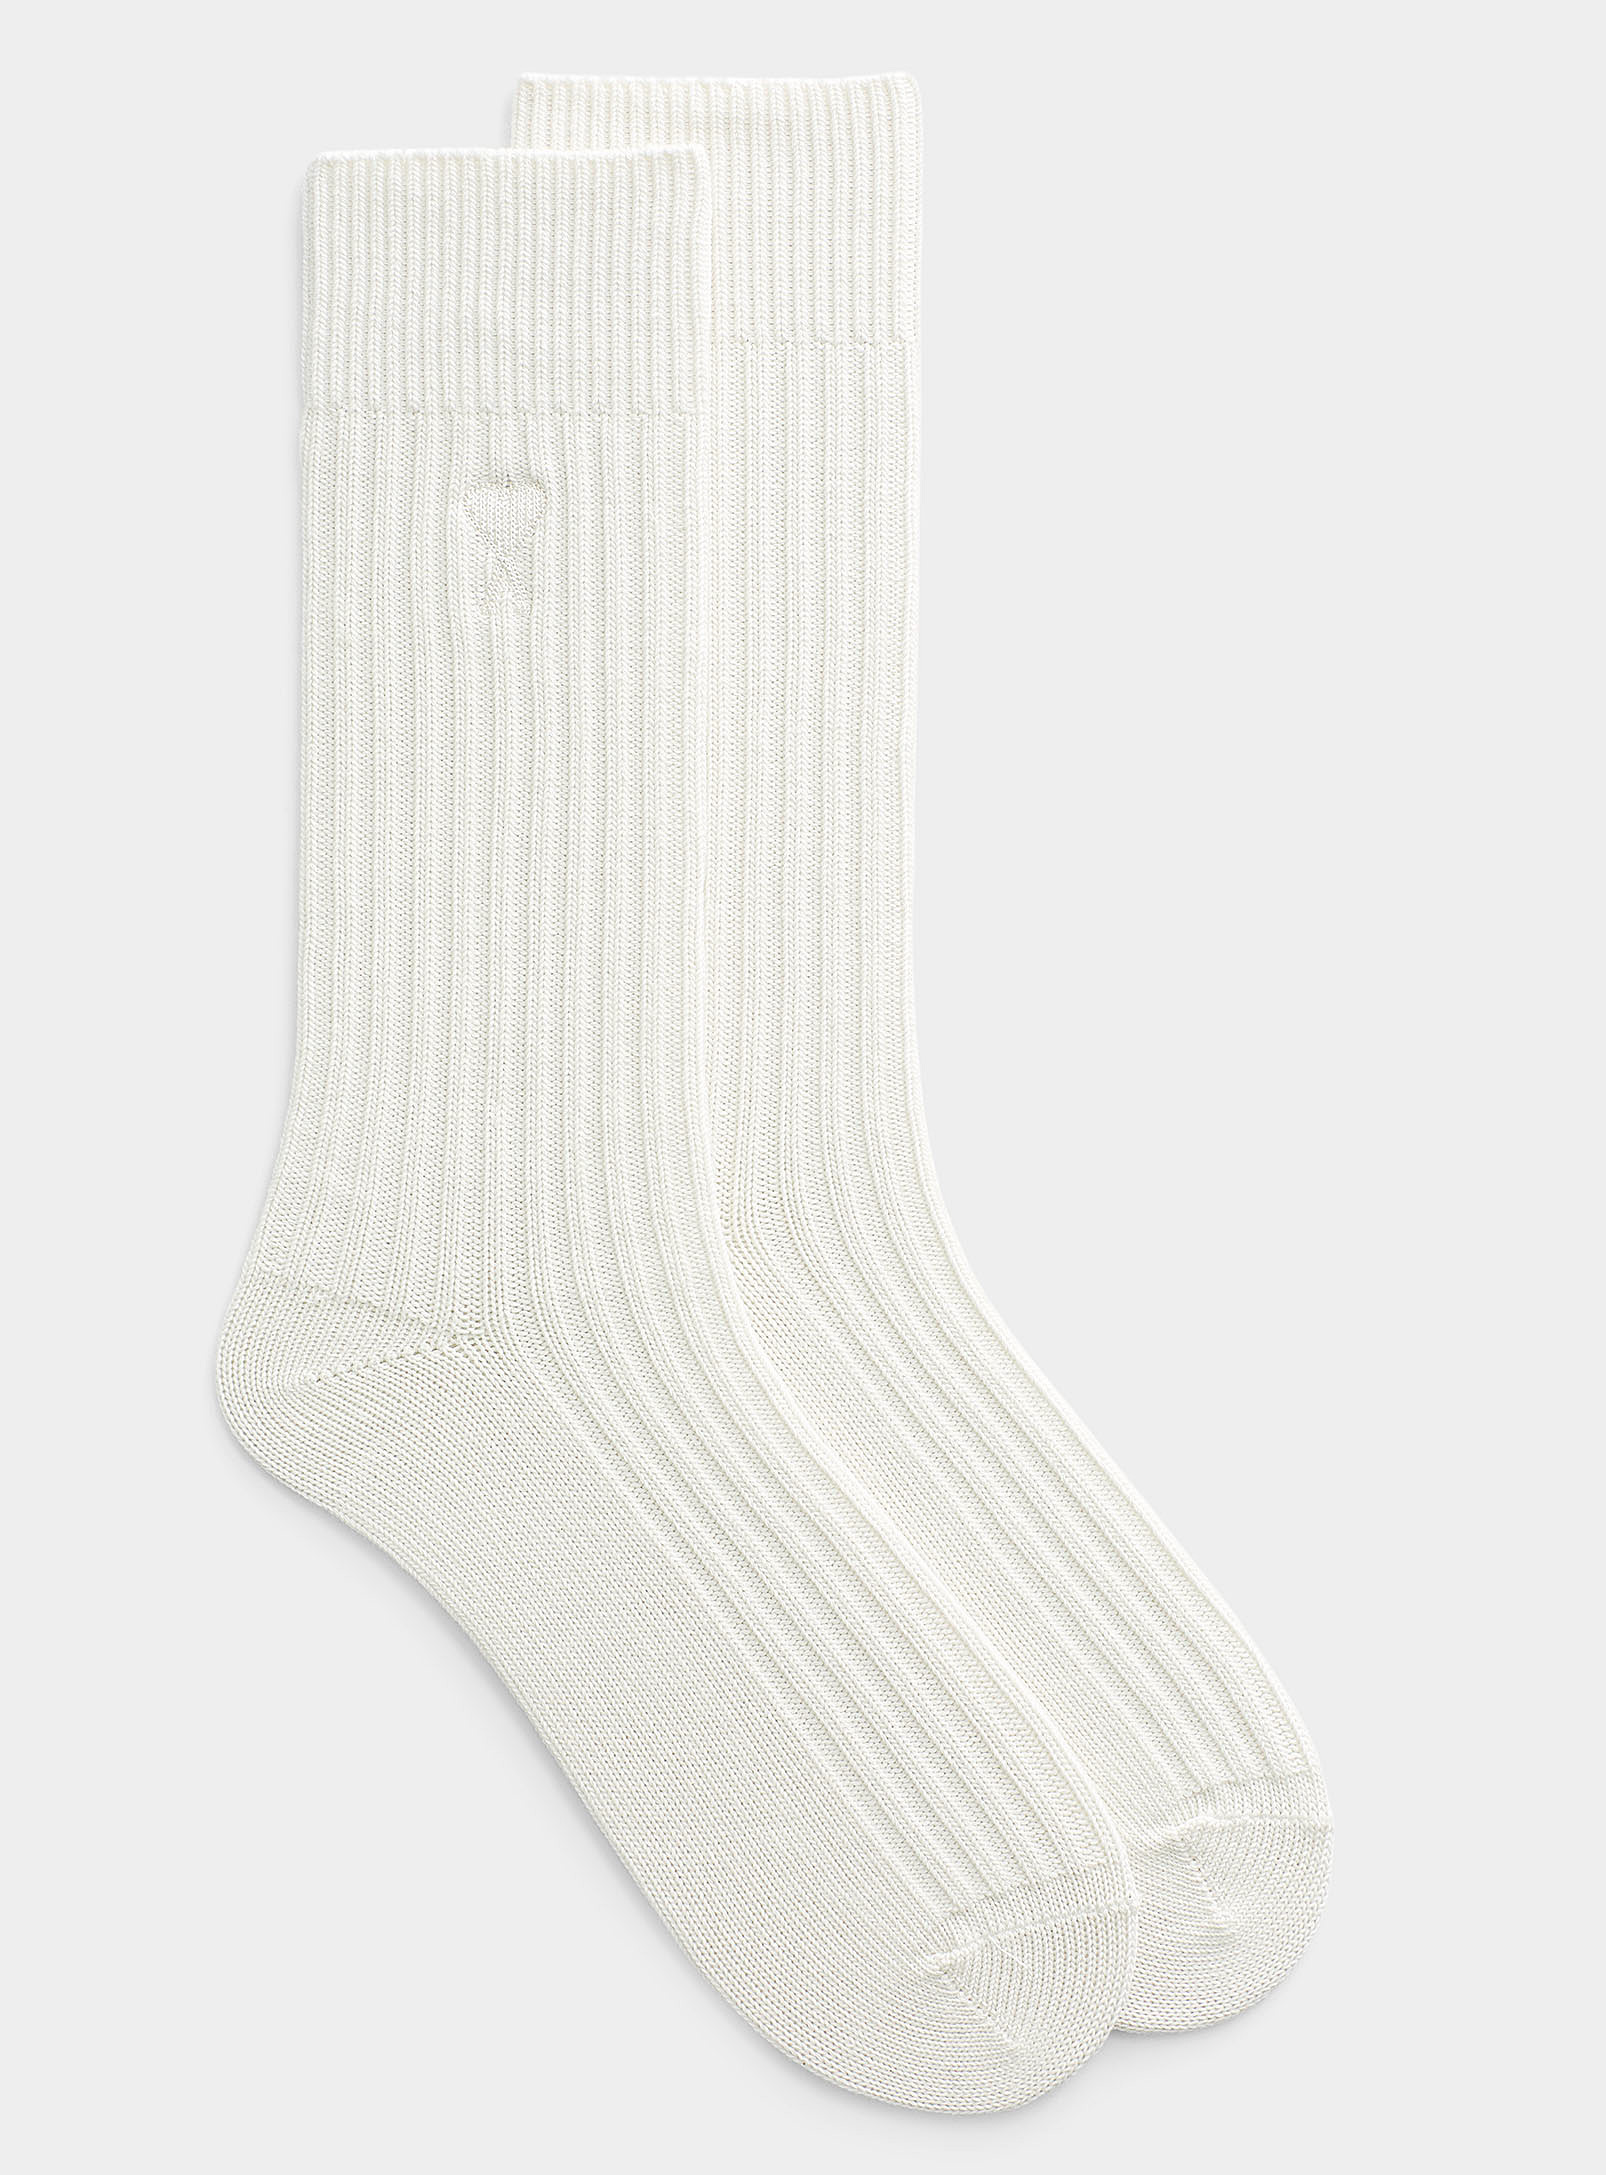 Ami Alexandre Mattiussi Ami De Coeur Sock In White